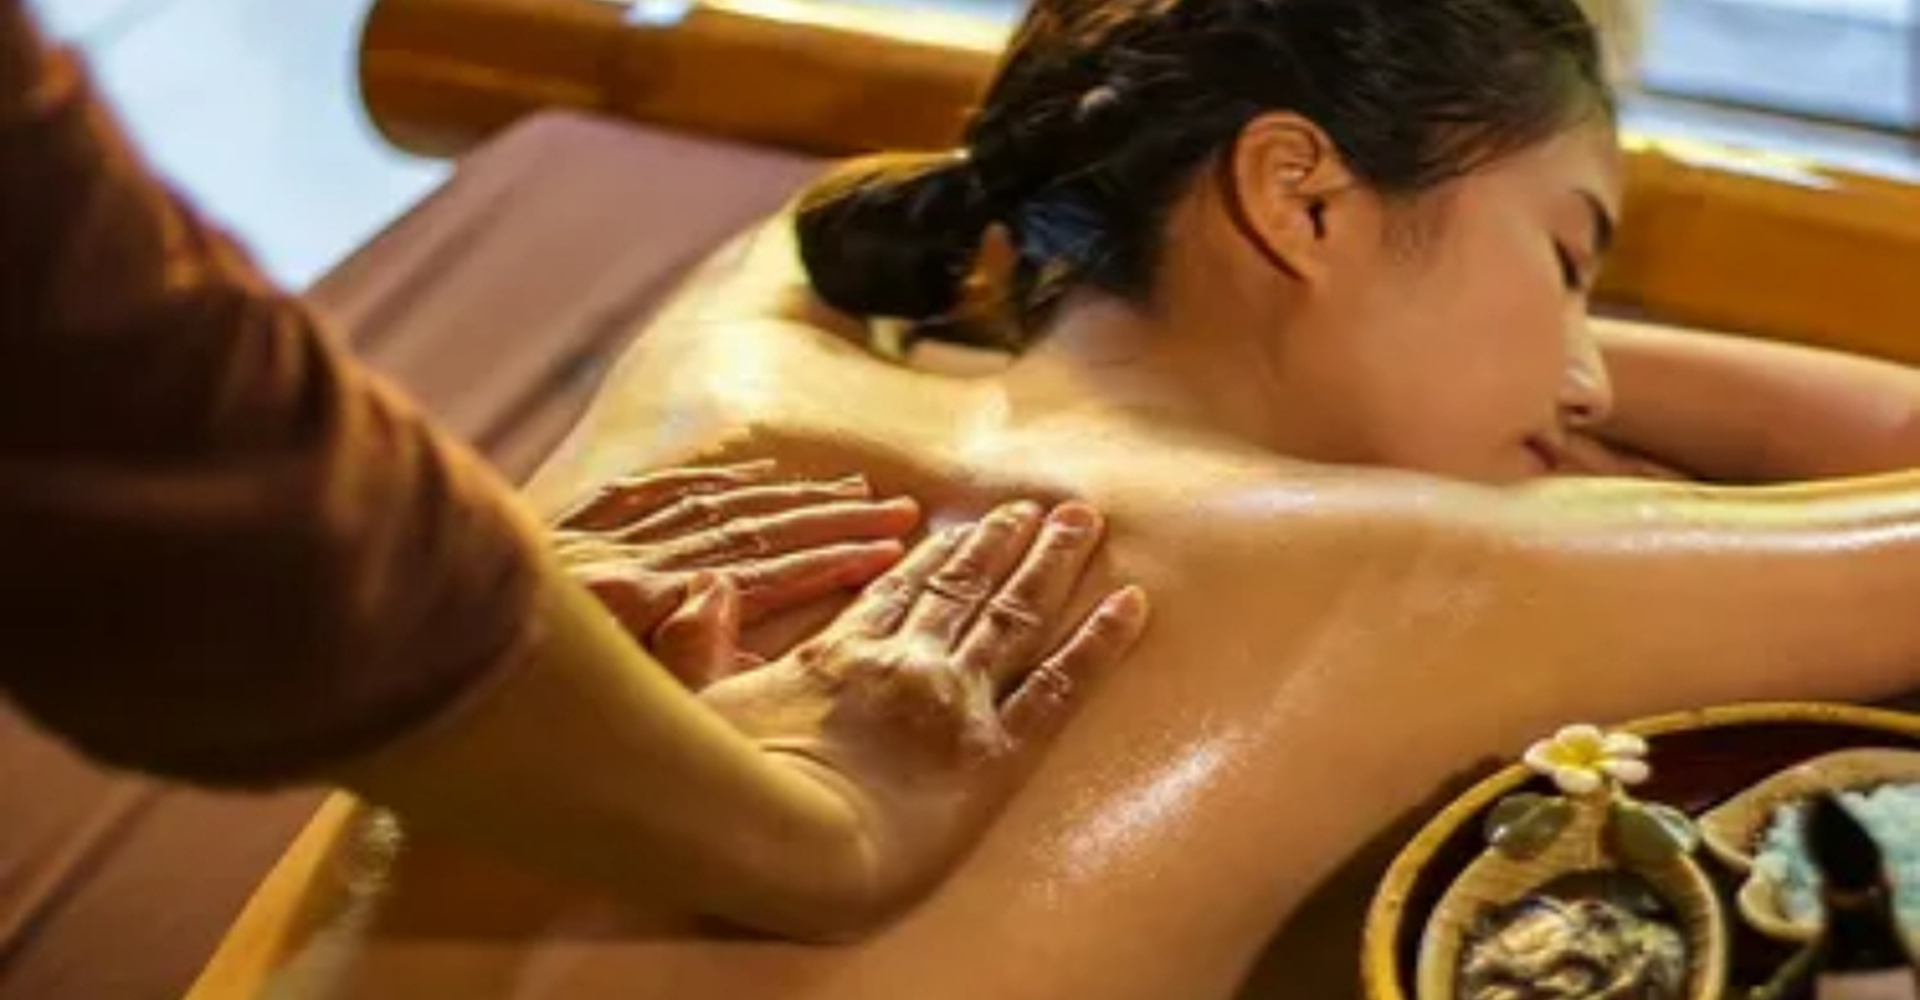 Oil massage videos. Тайский Ойл массаж. Масляный массаж. Масляный массаж всего тела. Тайский массаж маслом всего тела.